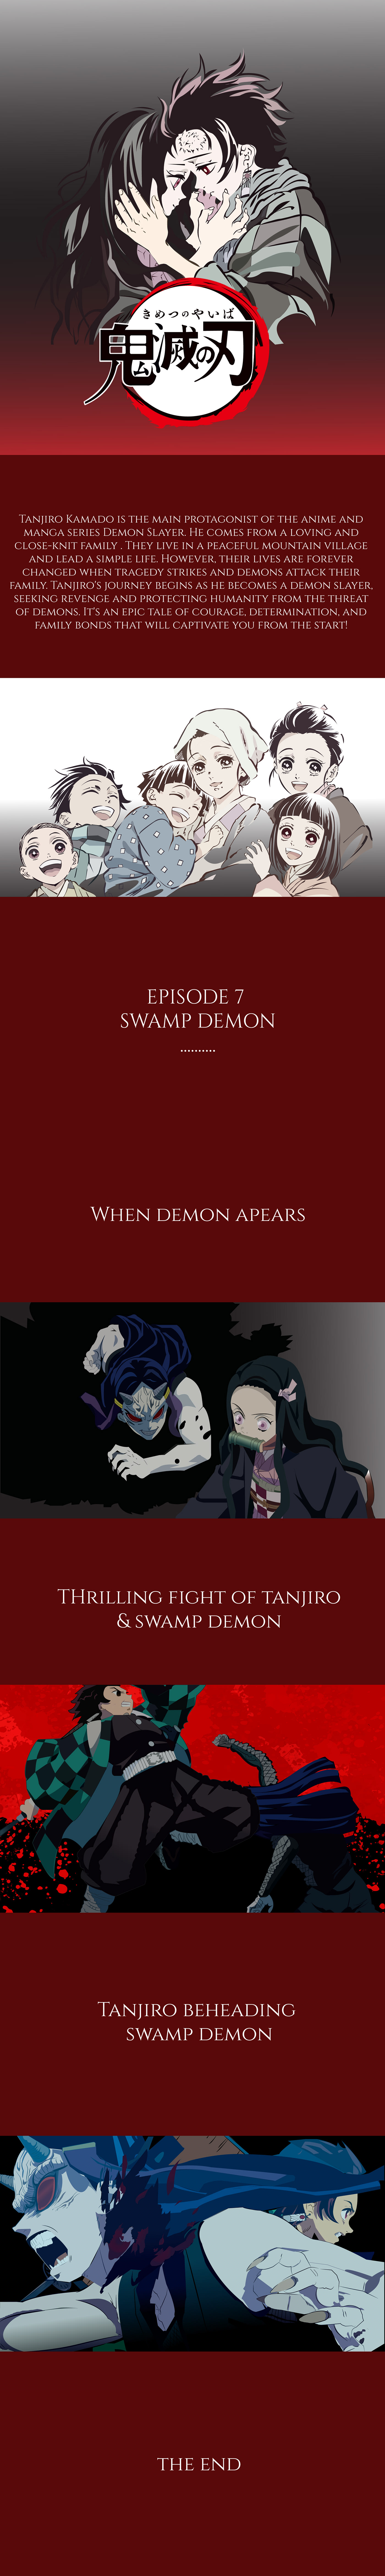 demon slayer artwork visual japanese Character design  anime art manga ILLUSTRATION  design animeart